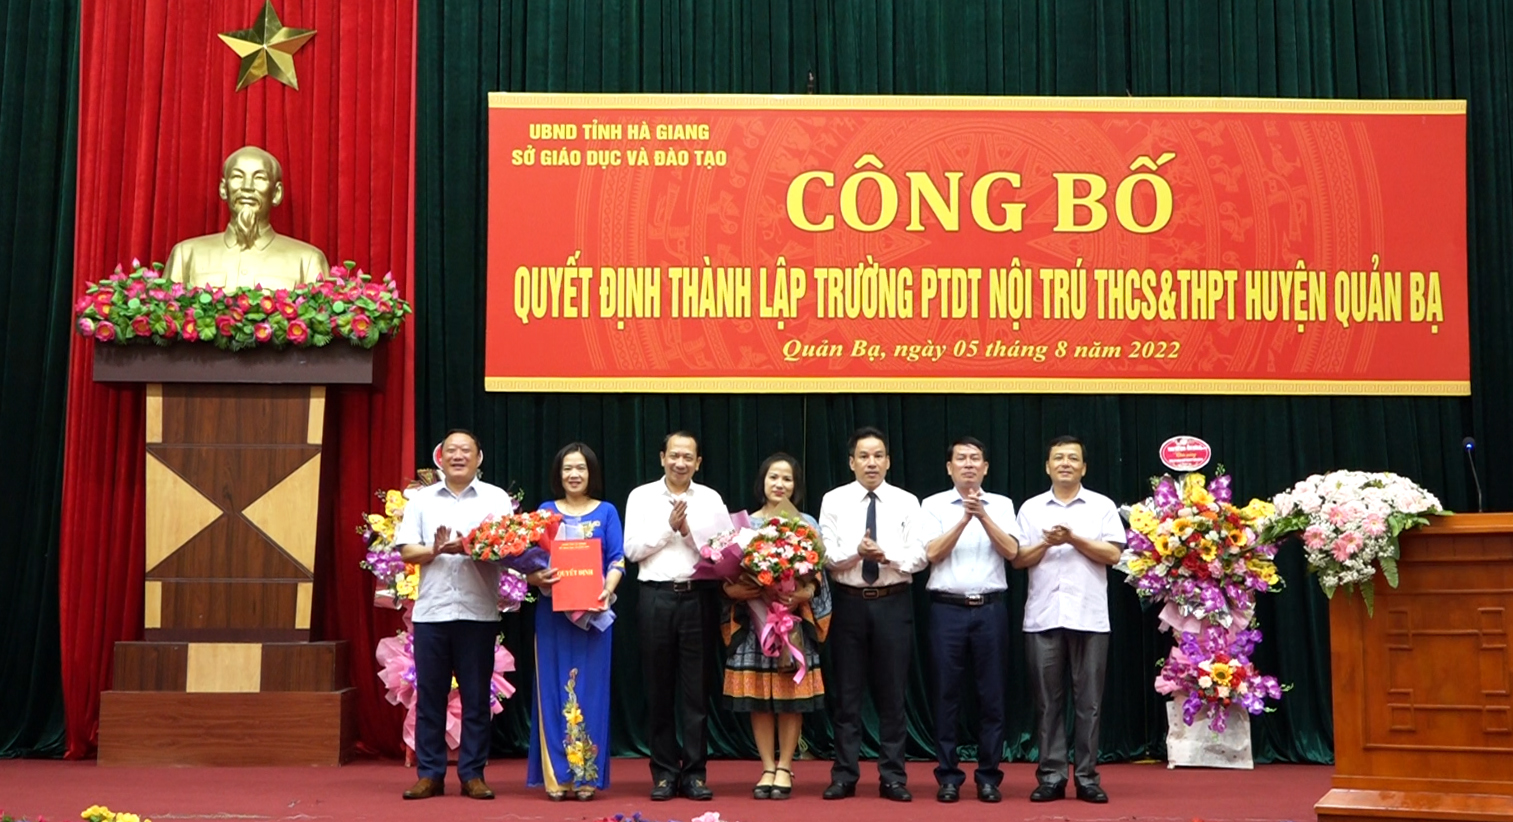 Công bố Quyết định thành lập Trường Phổ thông dân tộc Nội trú THCS & THPT huyện Quản Bạ.